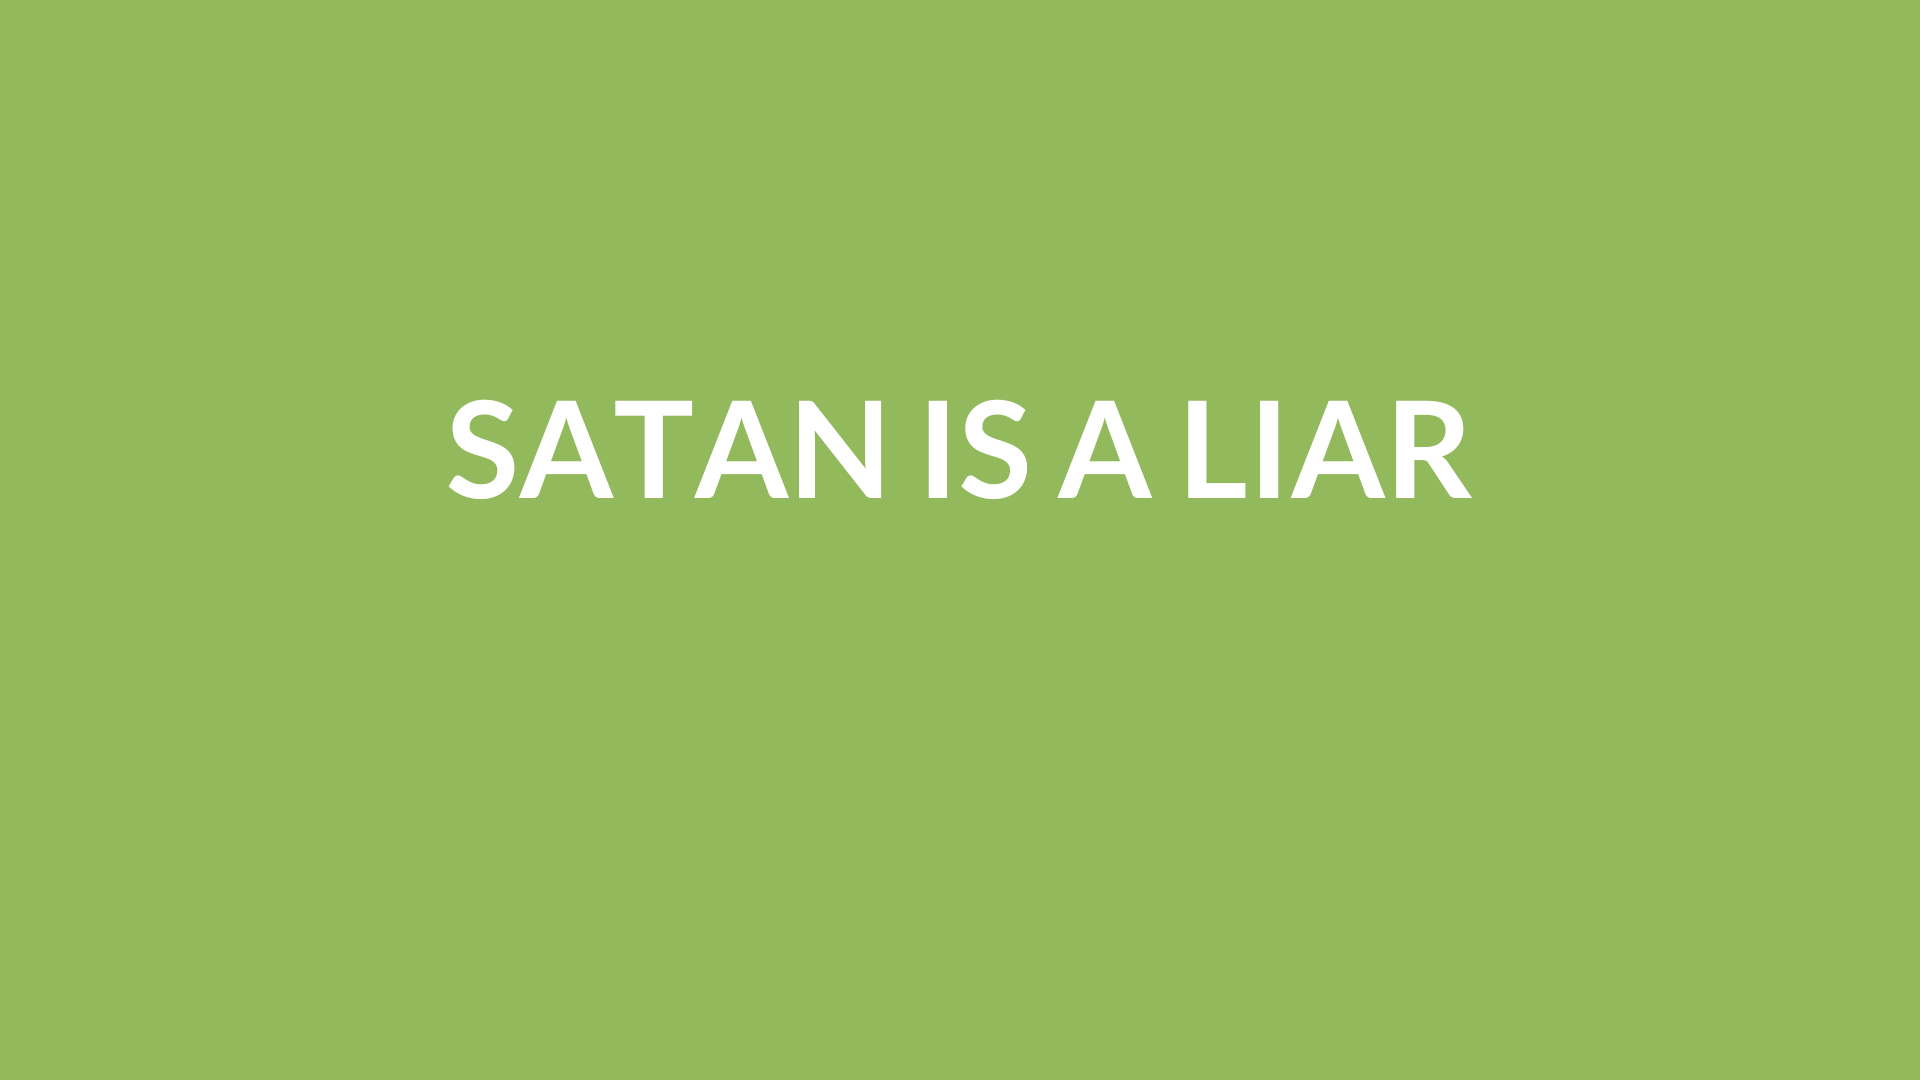 Satan Is A Liar